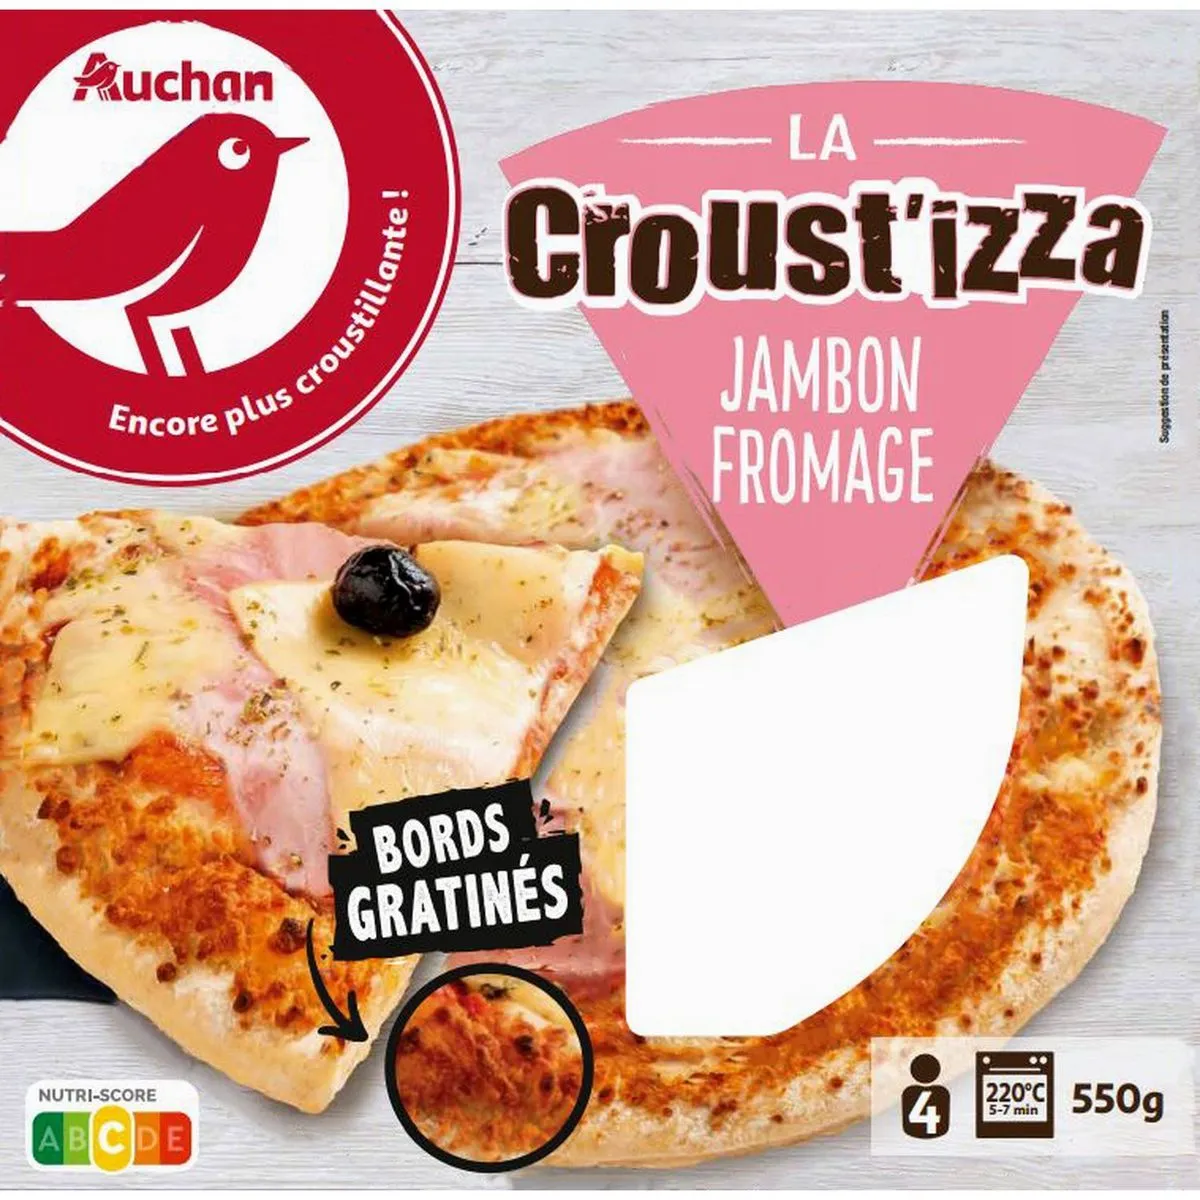 la croust'izza jambon fromage auchan